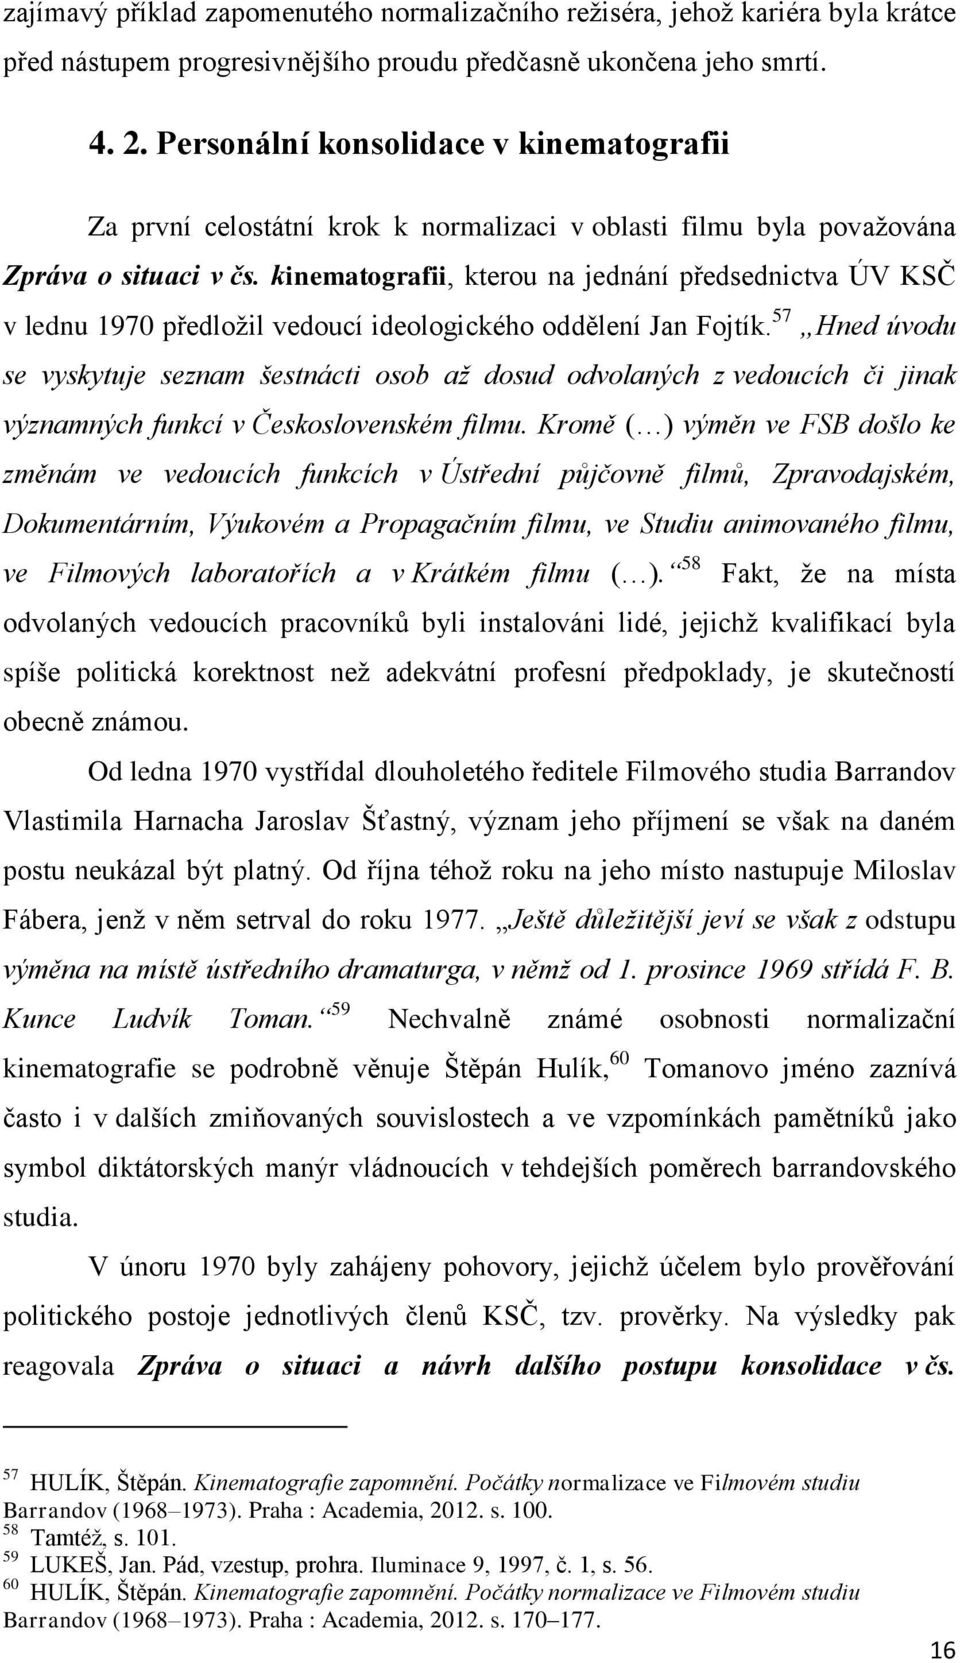 kinematografii, kterou na jednání předsednictva ÚV KSČ v lednu 1970 předložil vedoucí ideologického oddělení Jan Fojtík.